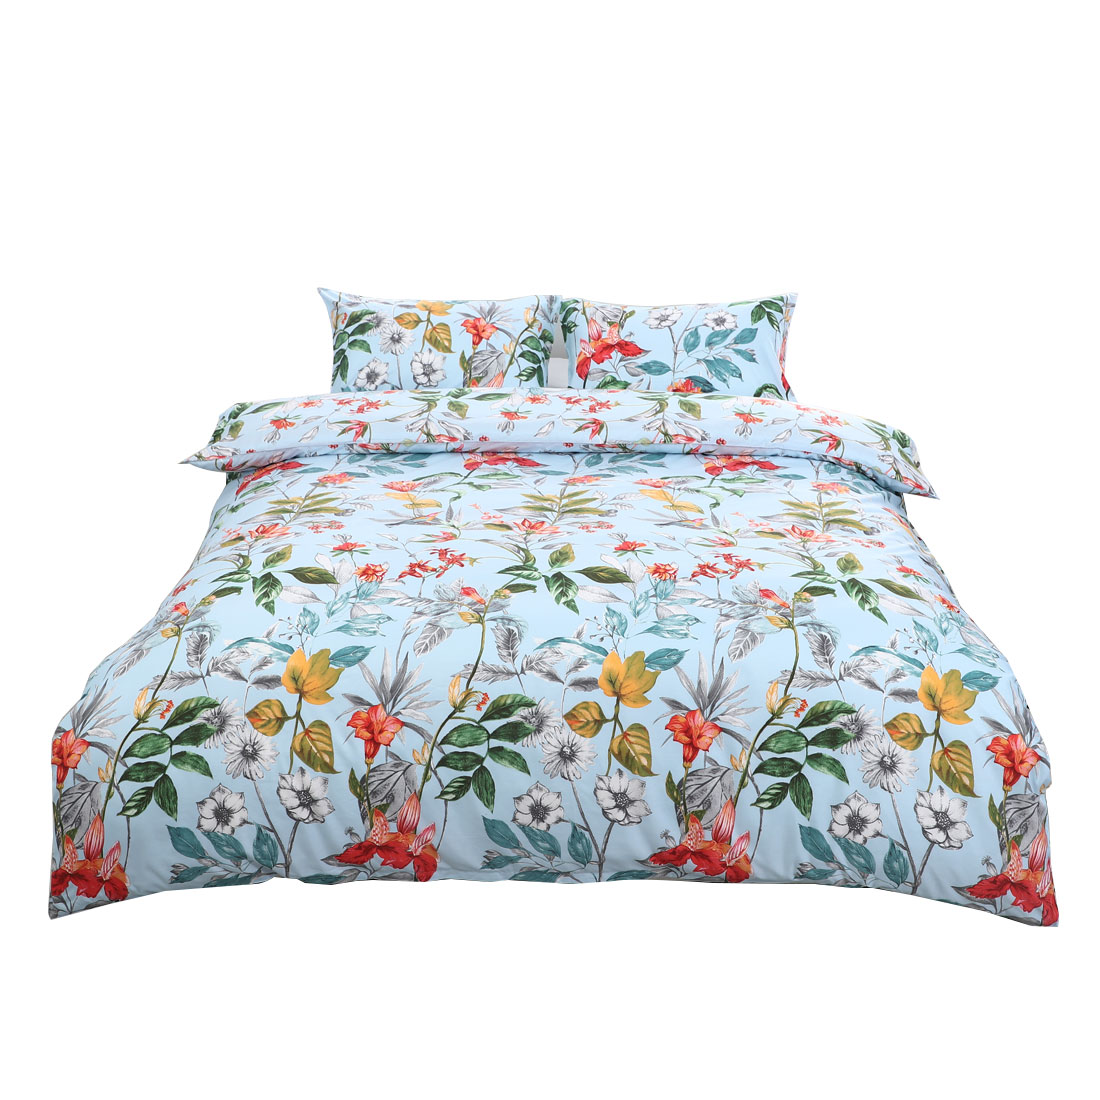 Floral Bedding Set Duvet Cover Set Comforter Cover Full Size